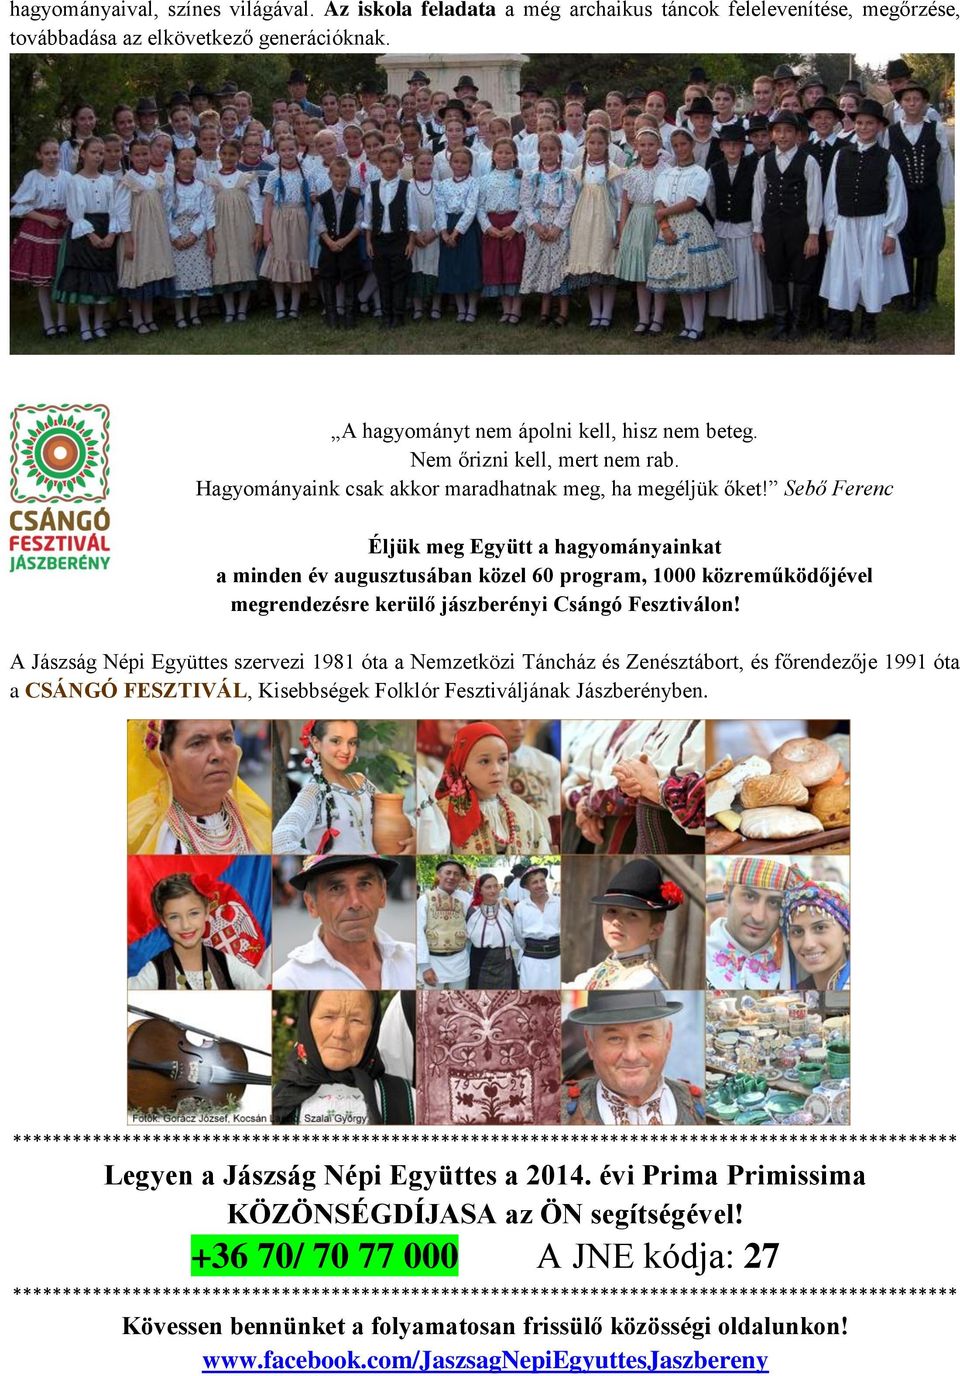 Sebő Ferenc Éljük meg Együtt a hagyományainkat a minden év augusztusában közel 60 program, 1000 közreműködőjével megrendezésre kerülő jászberényi Csángó Fesztiválon!